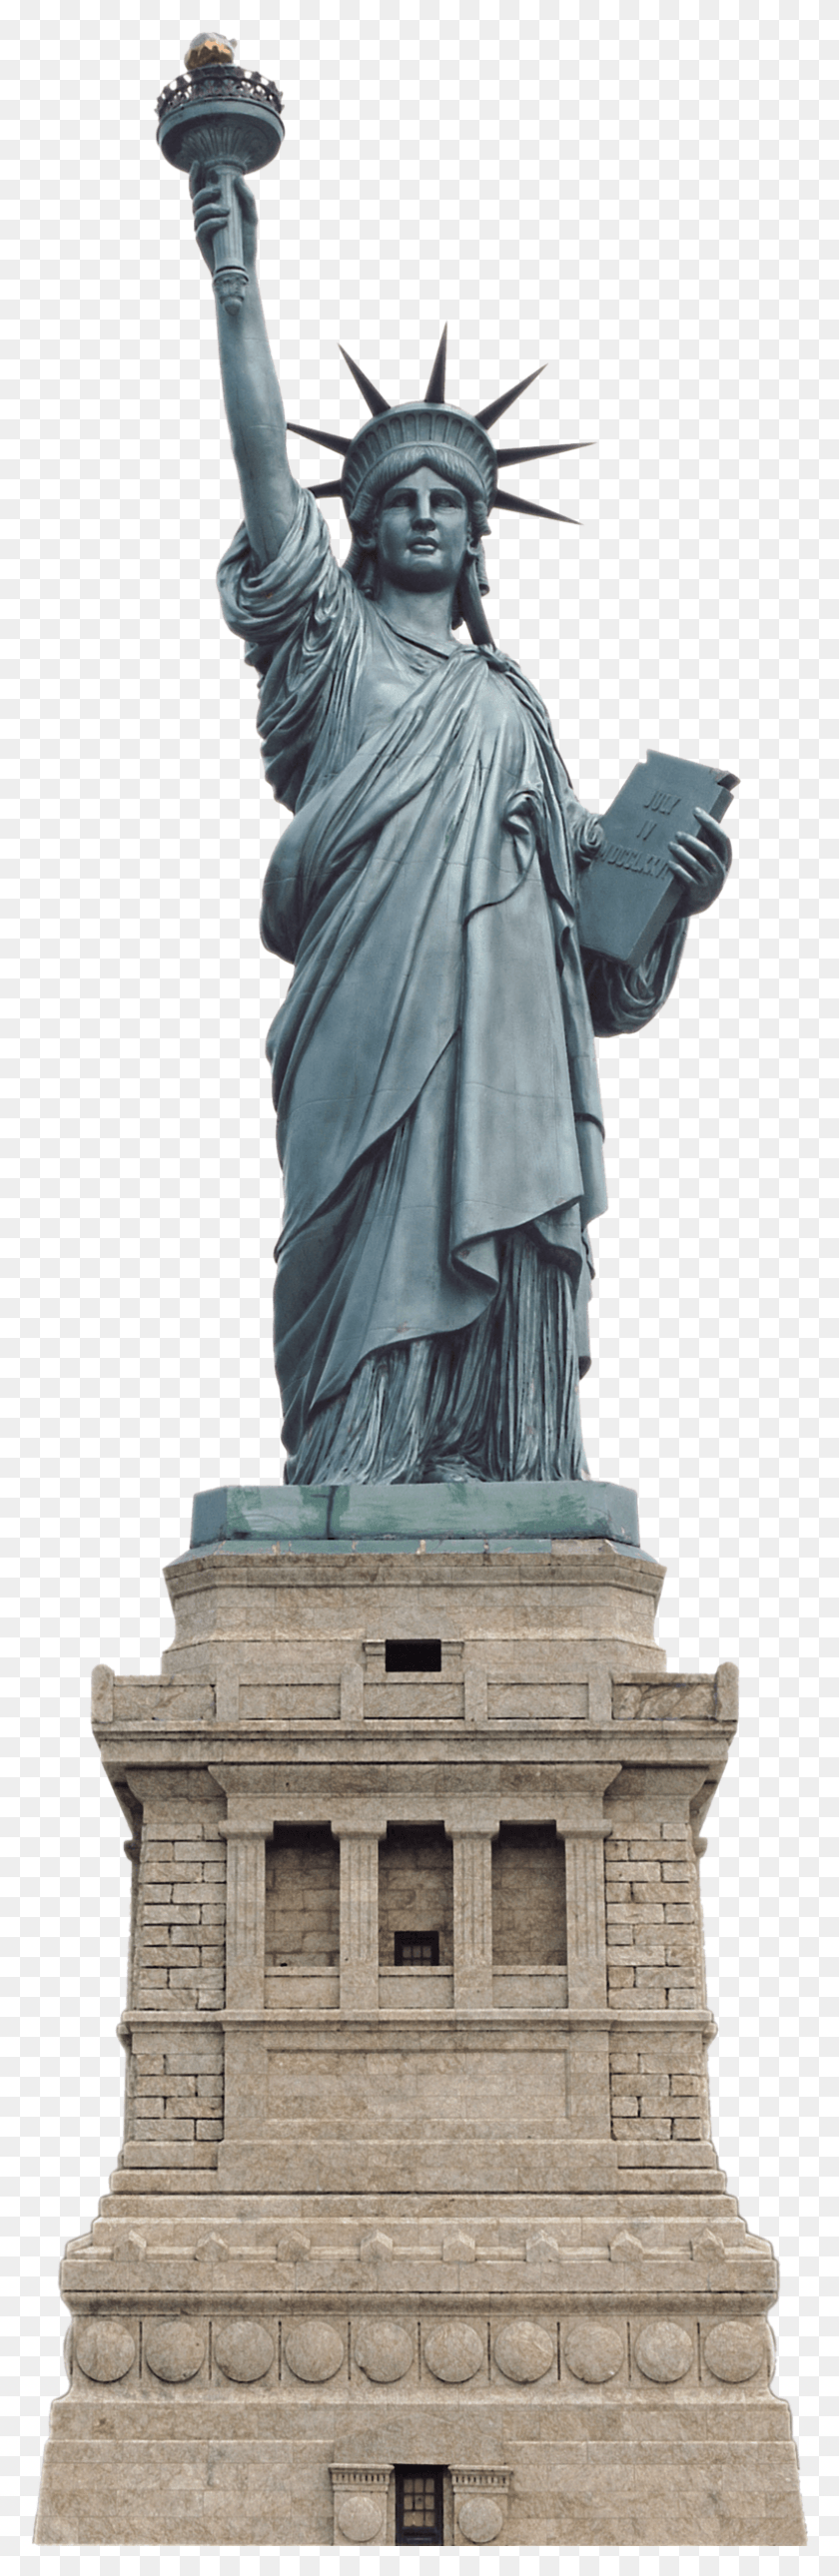 789x2550 Статуя Свободы Изображения Прозрачная Галерея Статуя Свободы Прозрачный Фон, Скульптура, Памятник Hd Png Скачать